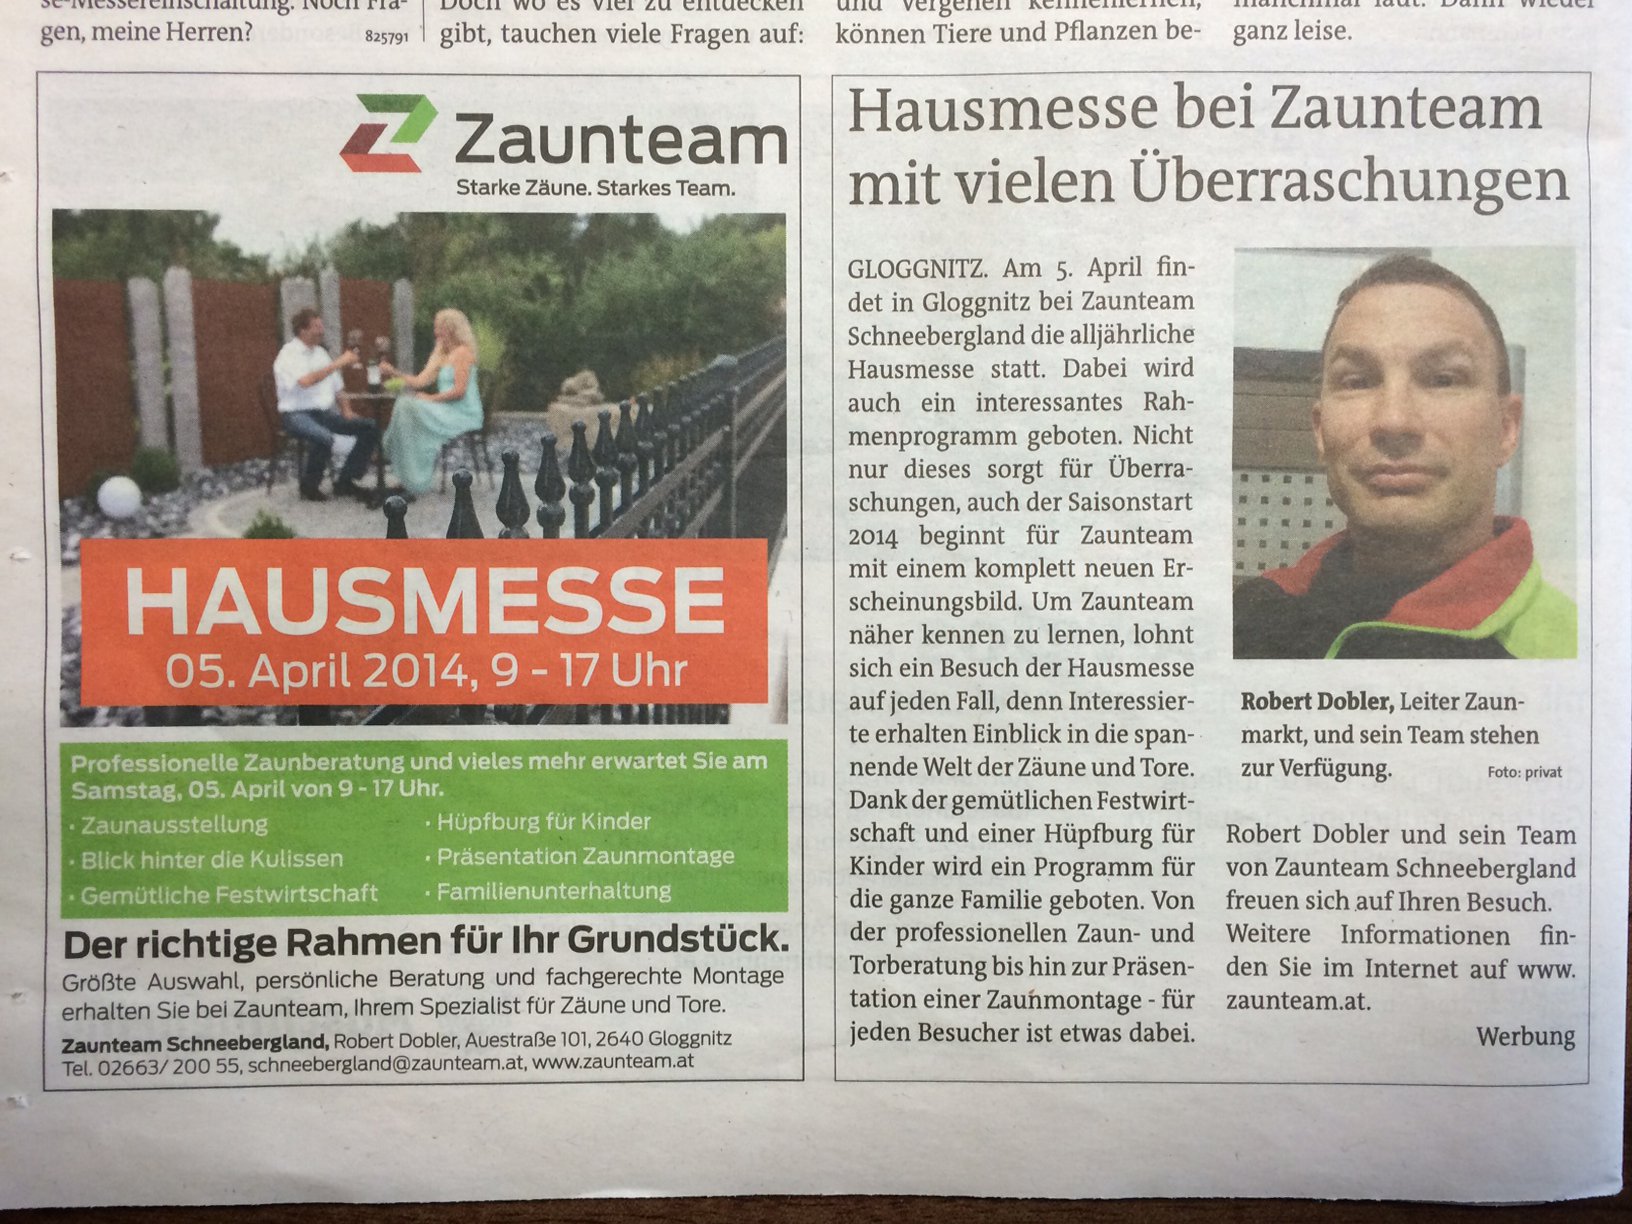 Bezirksblätter Neunkirchen 26. März, 2. April Zaunteam Schneebergland Hausmesse.JPG